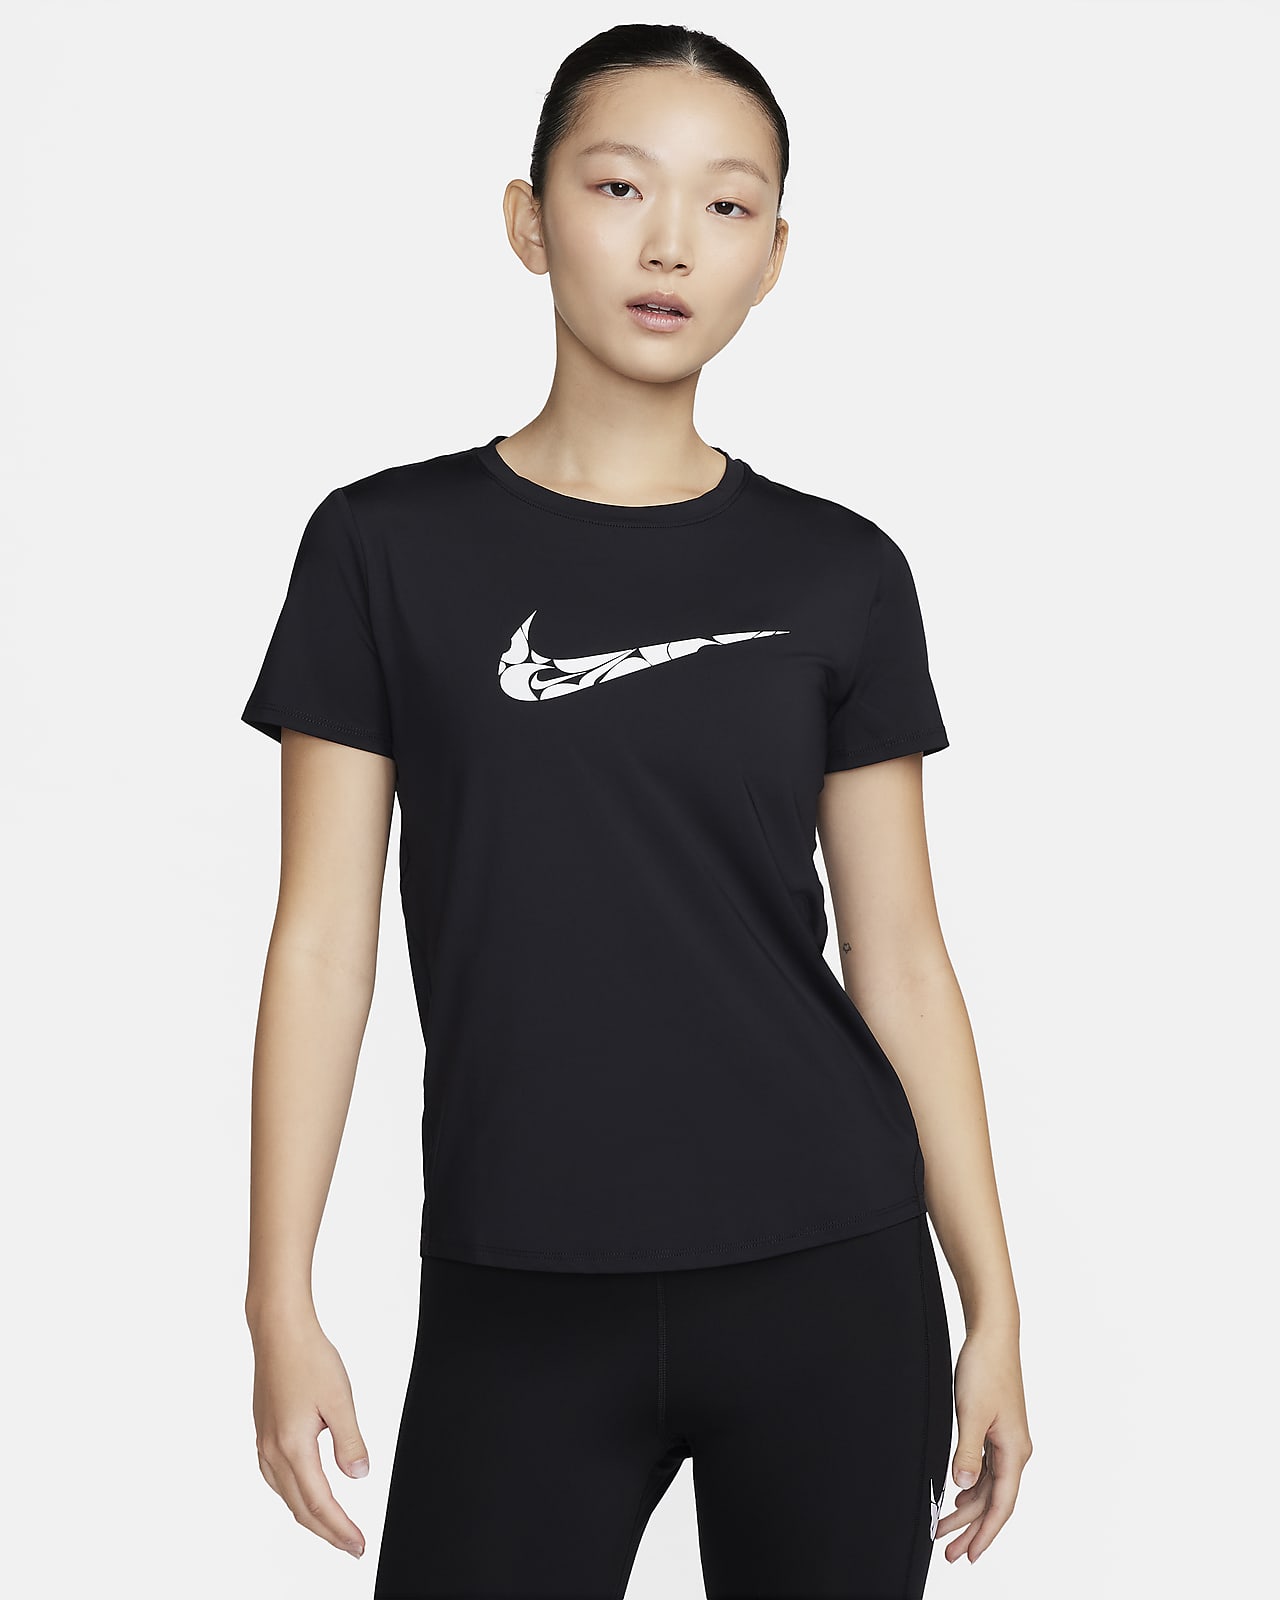 เสื้อวิ่งแขนสั้นผู้หญิง Dri-FIT Nike One Swoosh